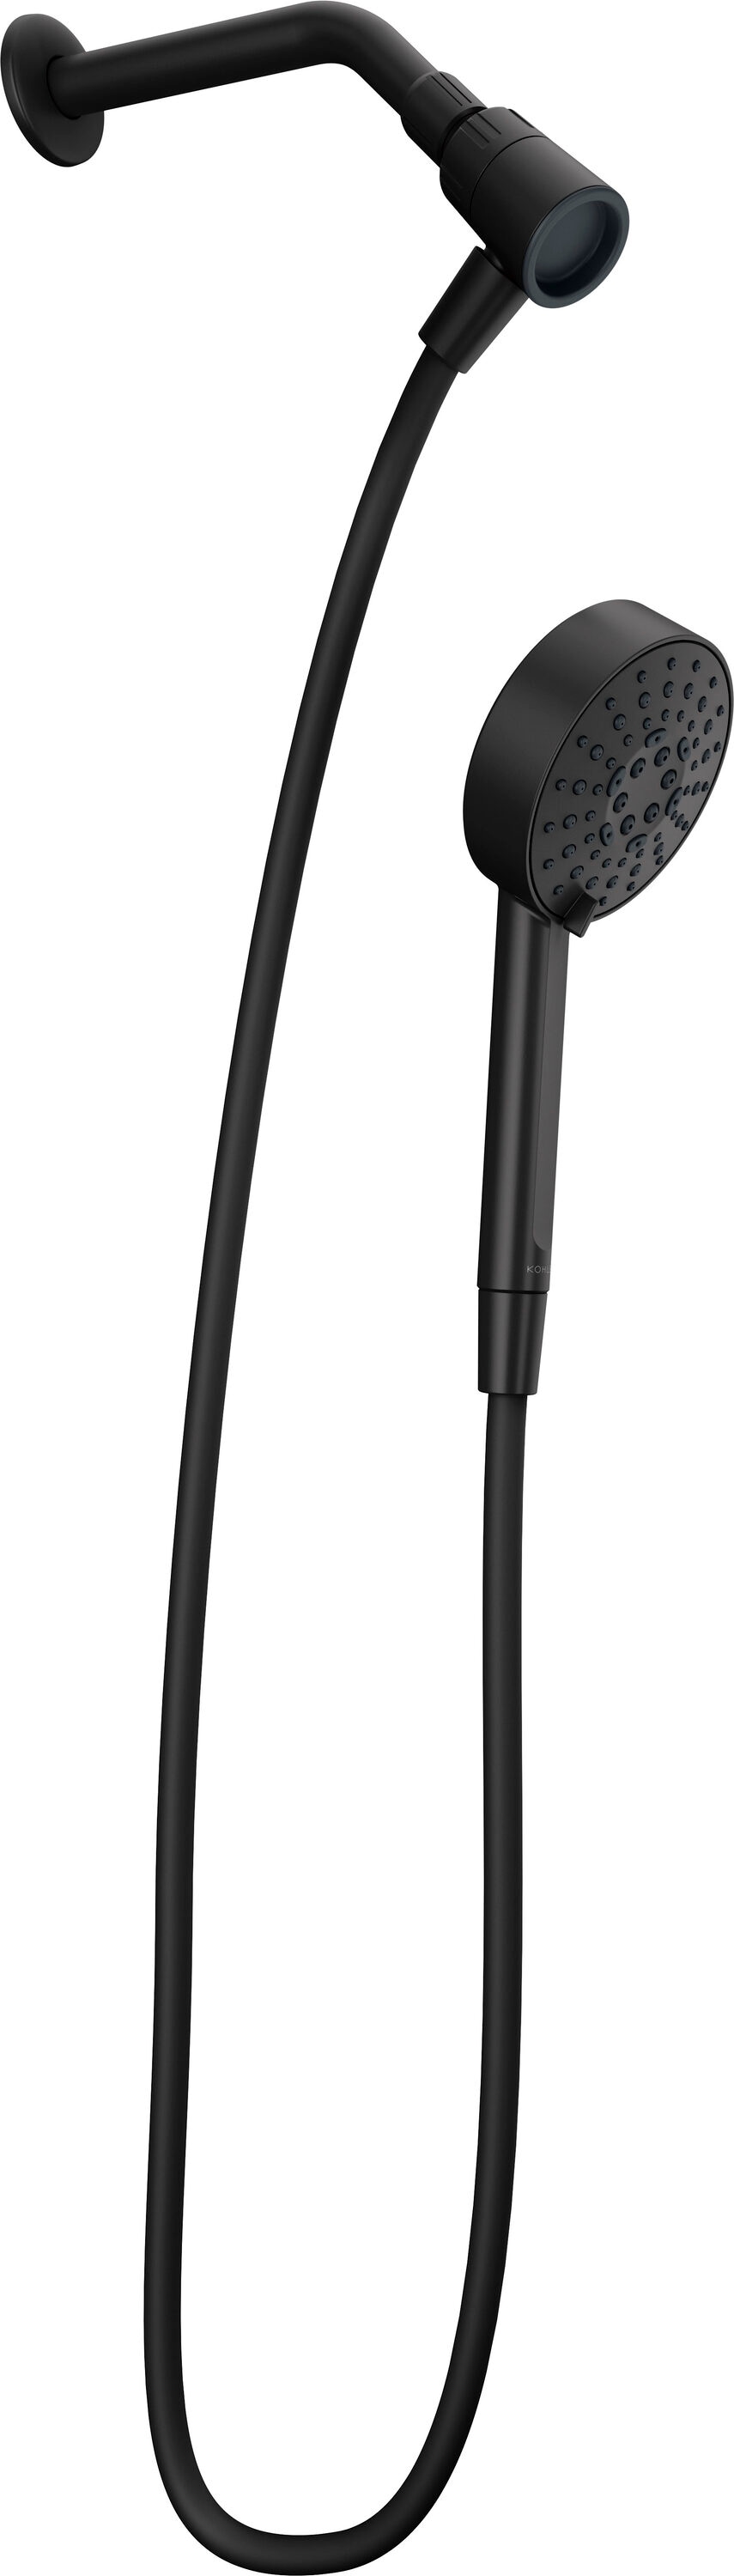 KOHLER Premise Matte Black Round Handheld Shower Head 1.75-GPM (6.6-LPM)